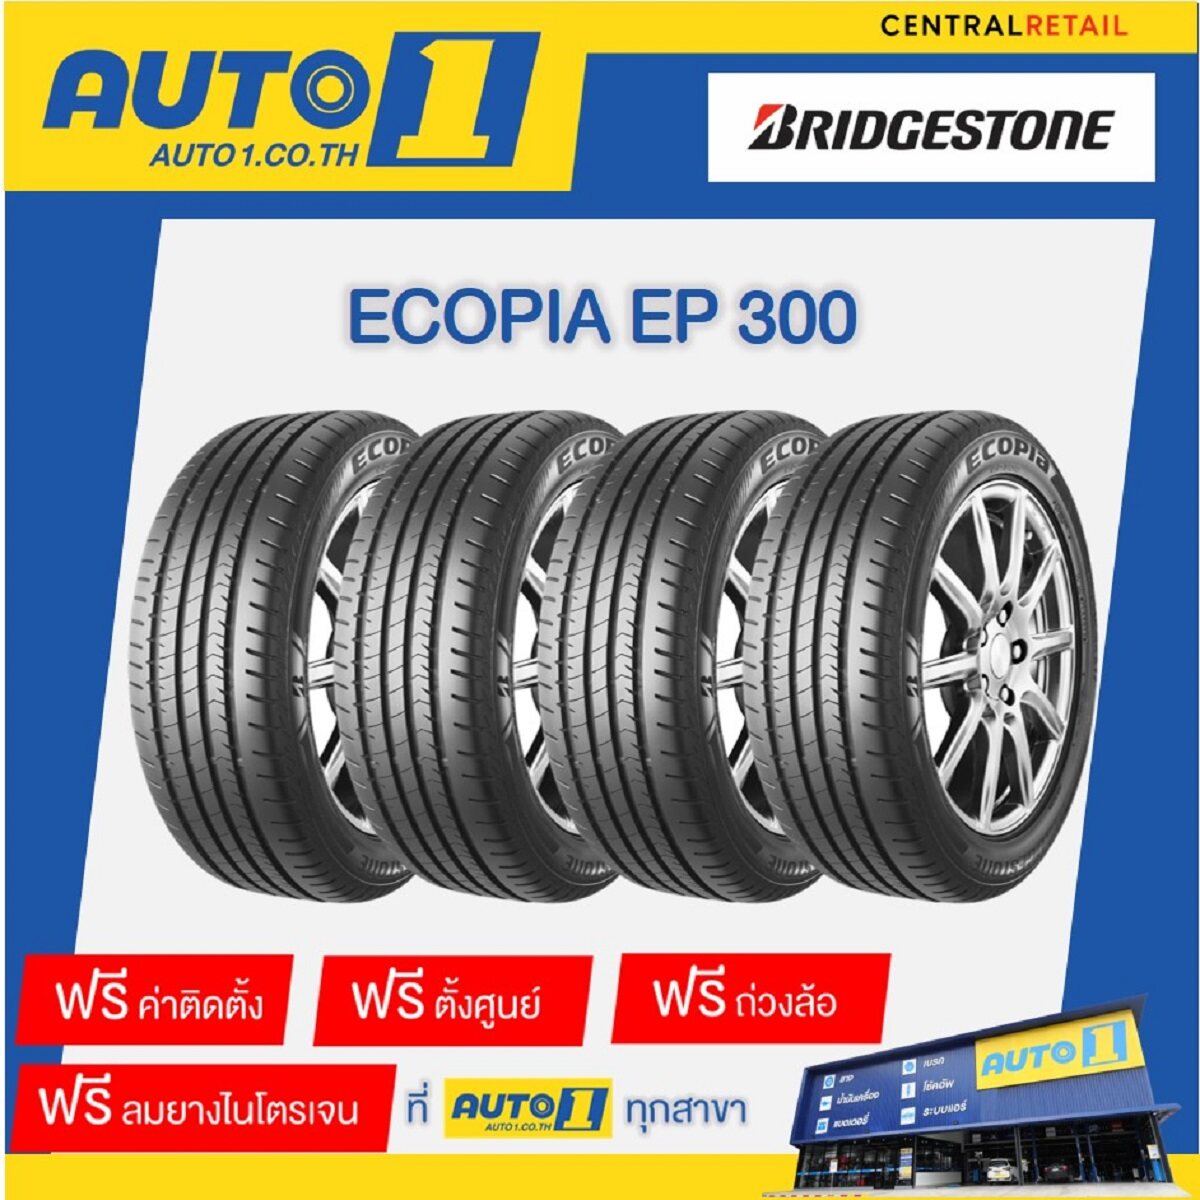 ยางรถยนต์ 195/60R15 Bridgestone Ecopia EP300 บริดจสโตน (รถเก๋ง ขอบ15  จำนวน 4 เส้น พร้อมติดตั้งยางที่ศูนย์บริการออโต้วัน)